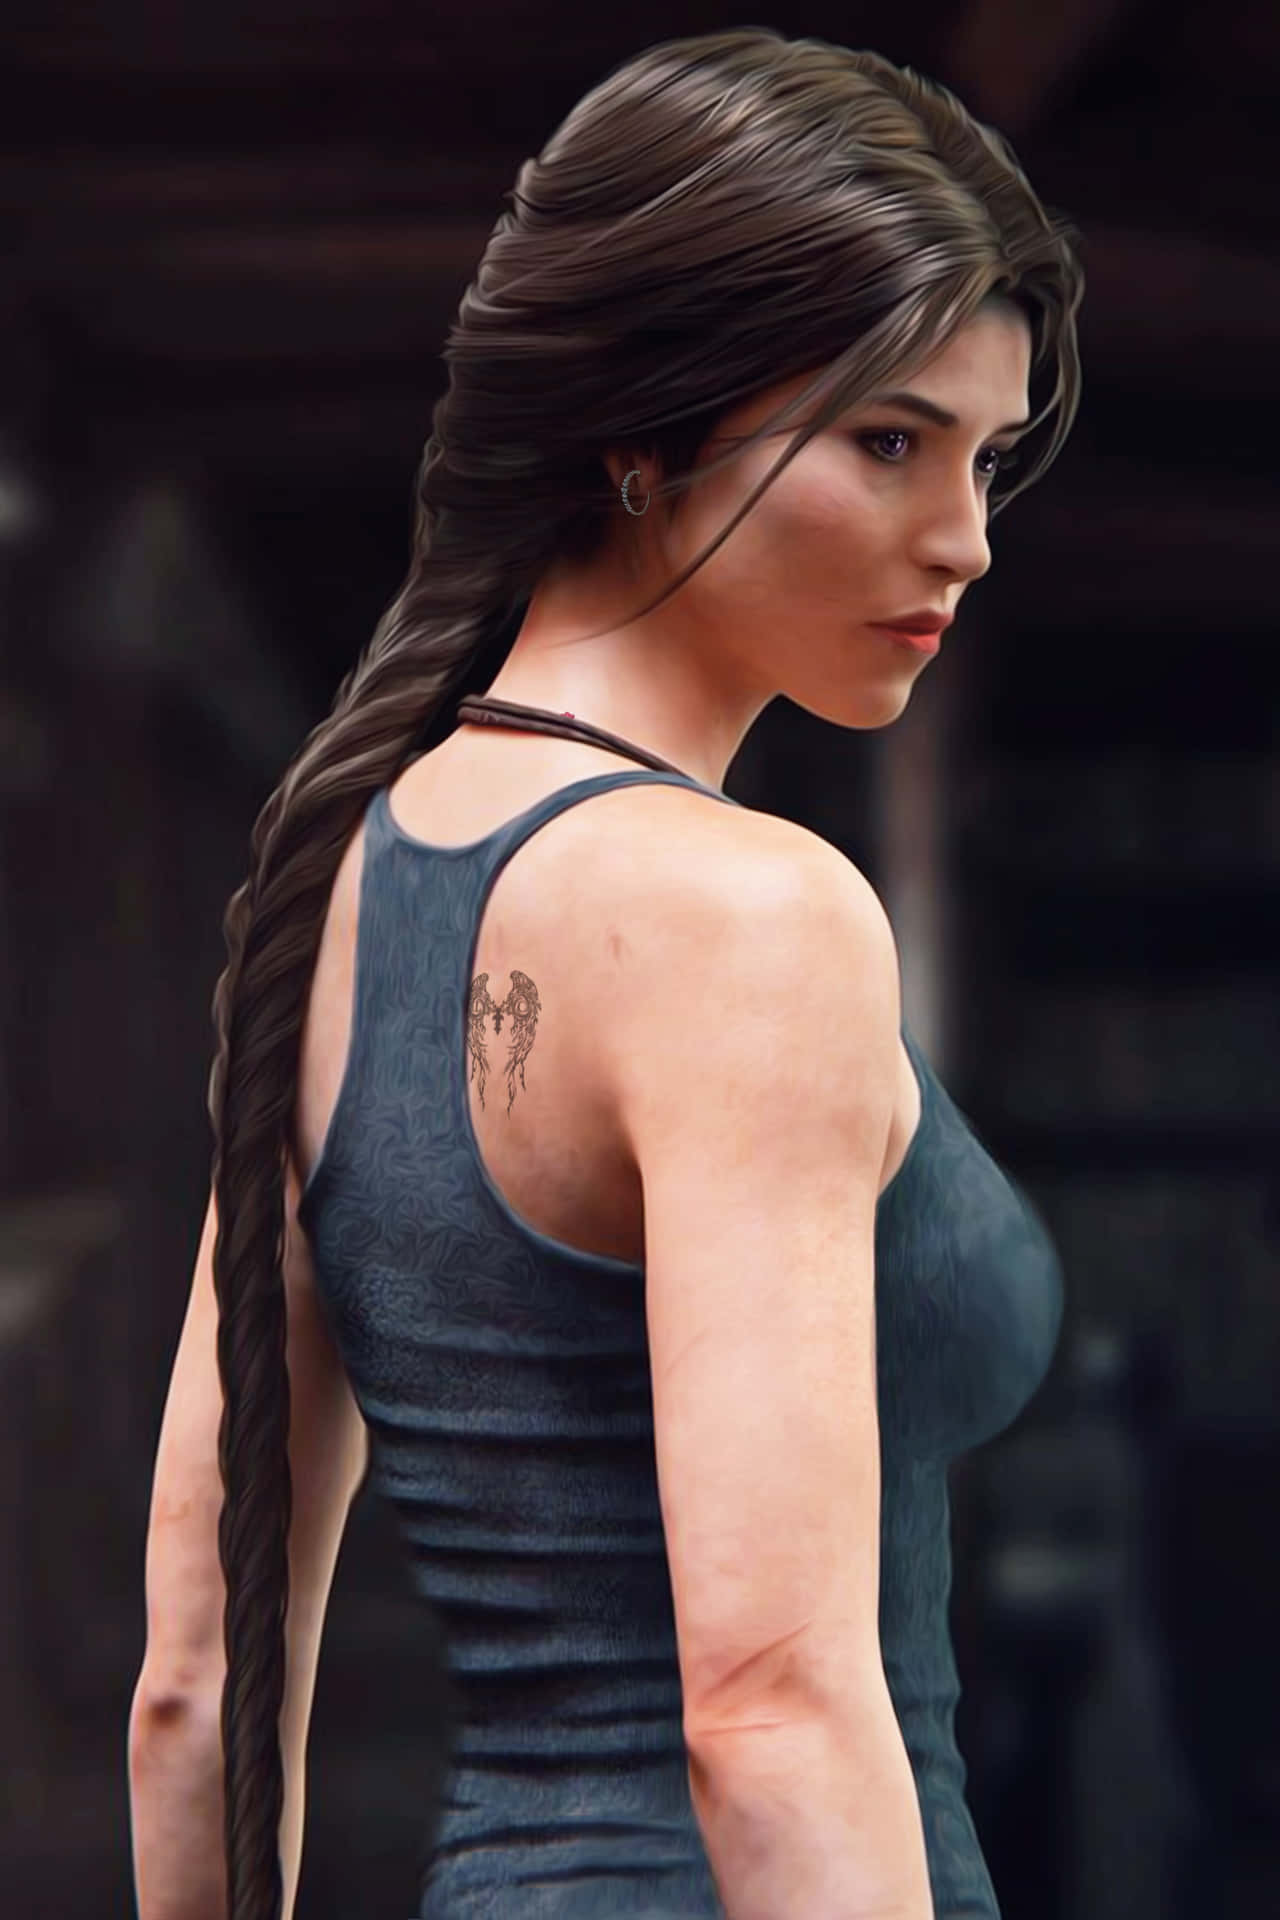 Croftandroid Bakgrundsbild För Rise Of The Tomb Raider Med Lara Croft.